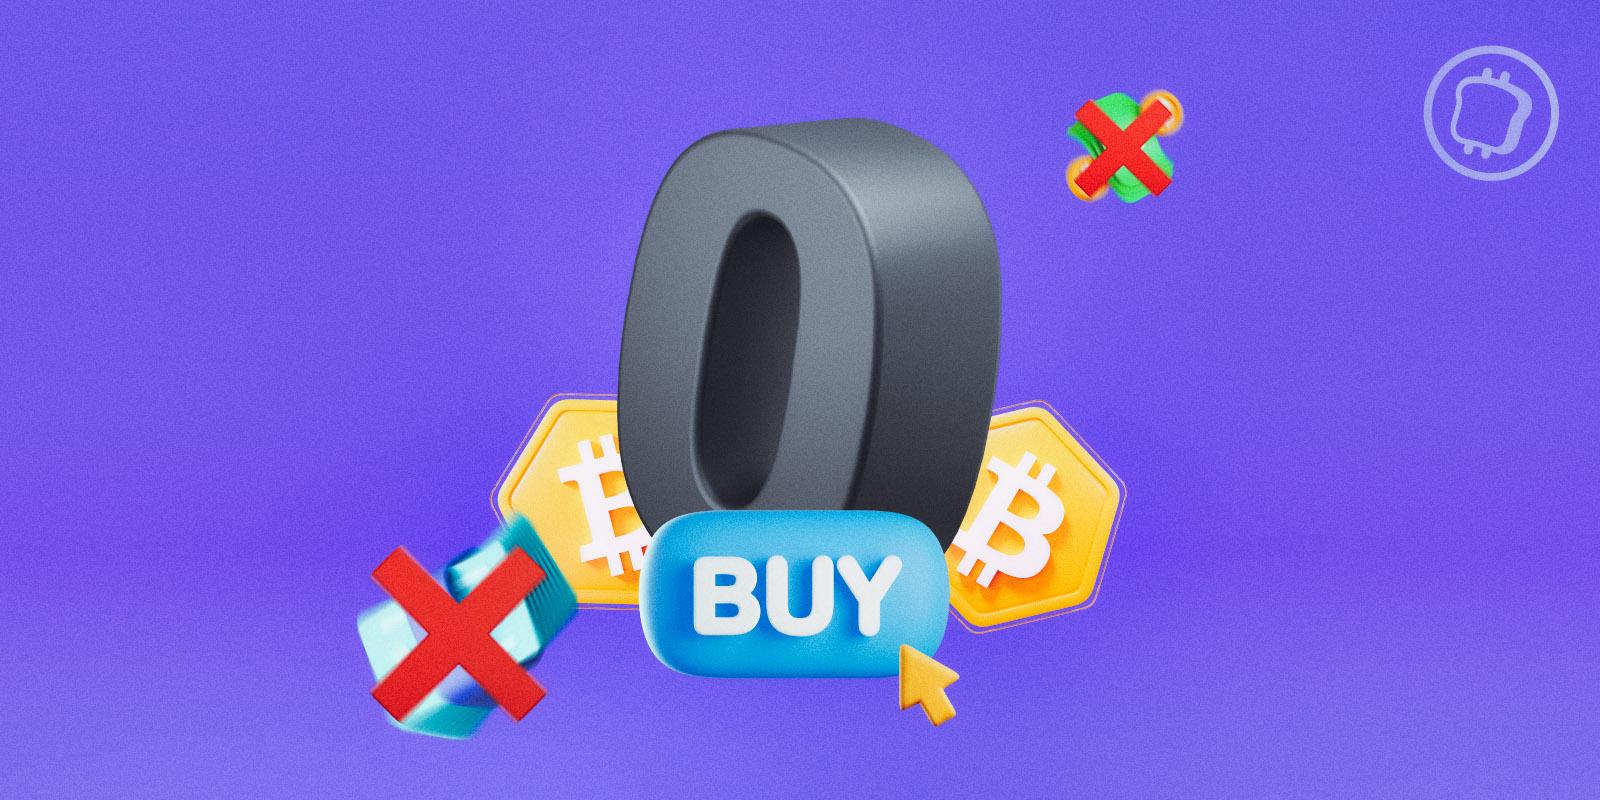 acheter des bitcoins sans frais